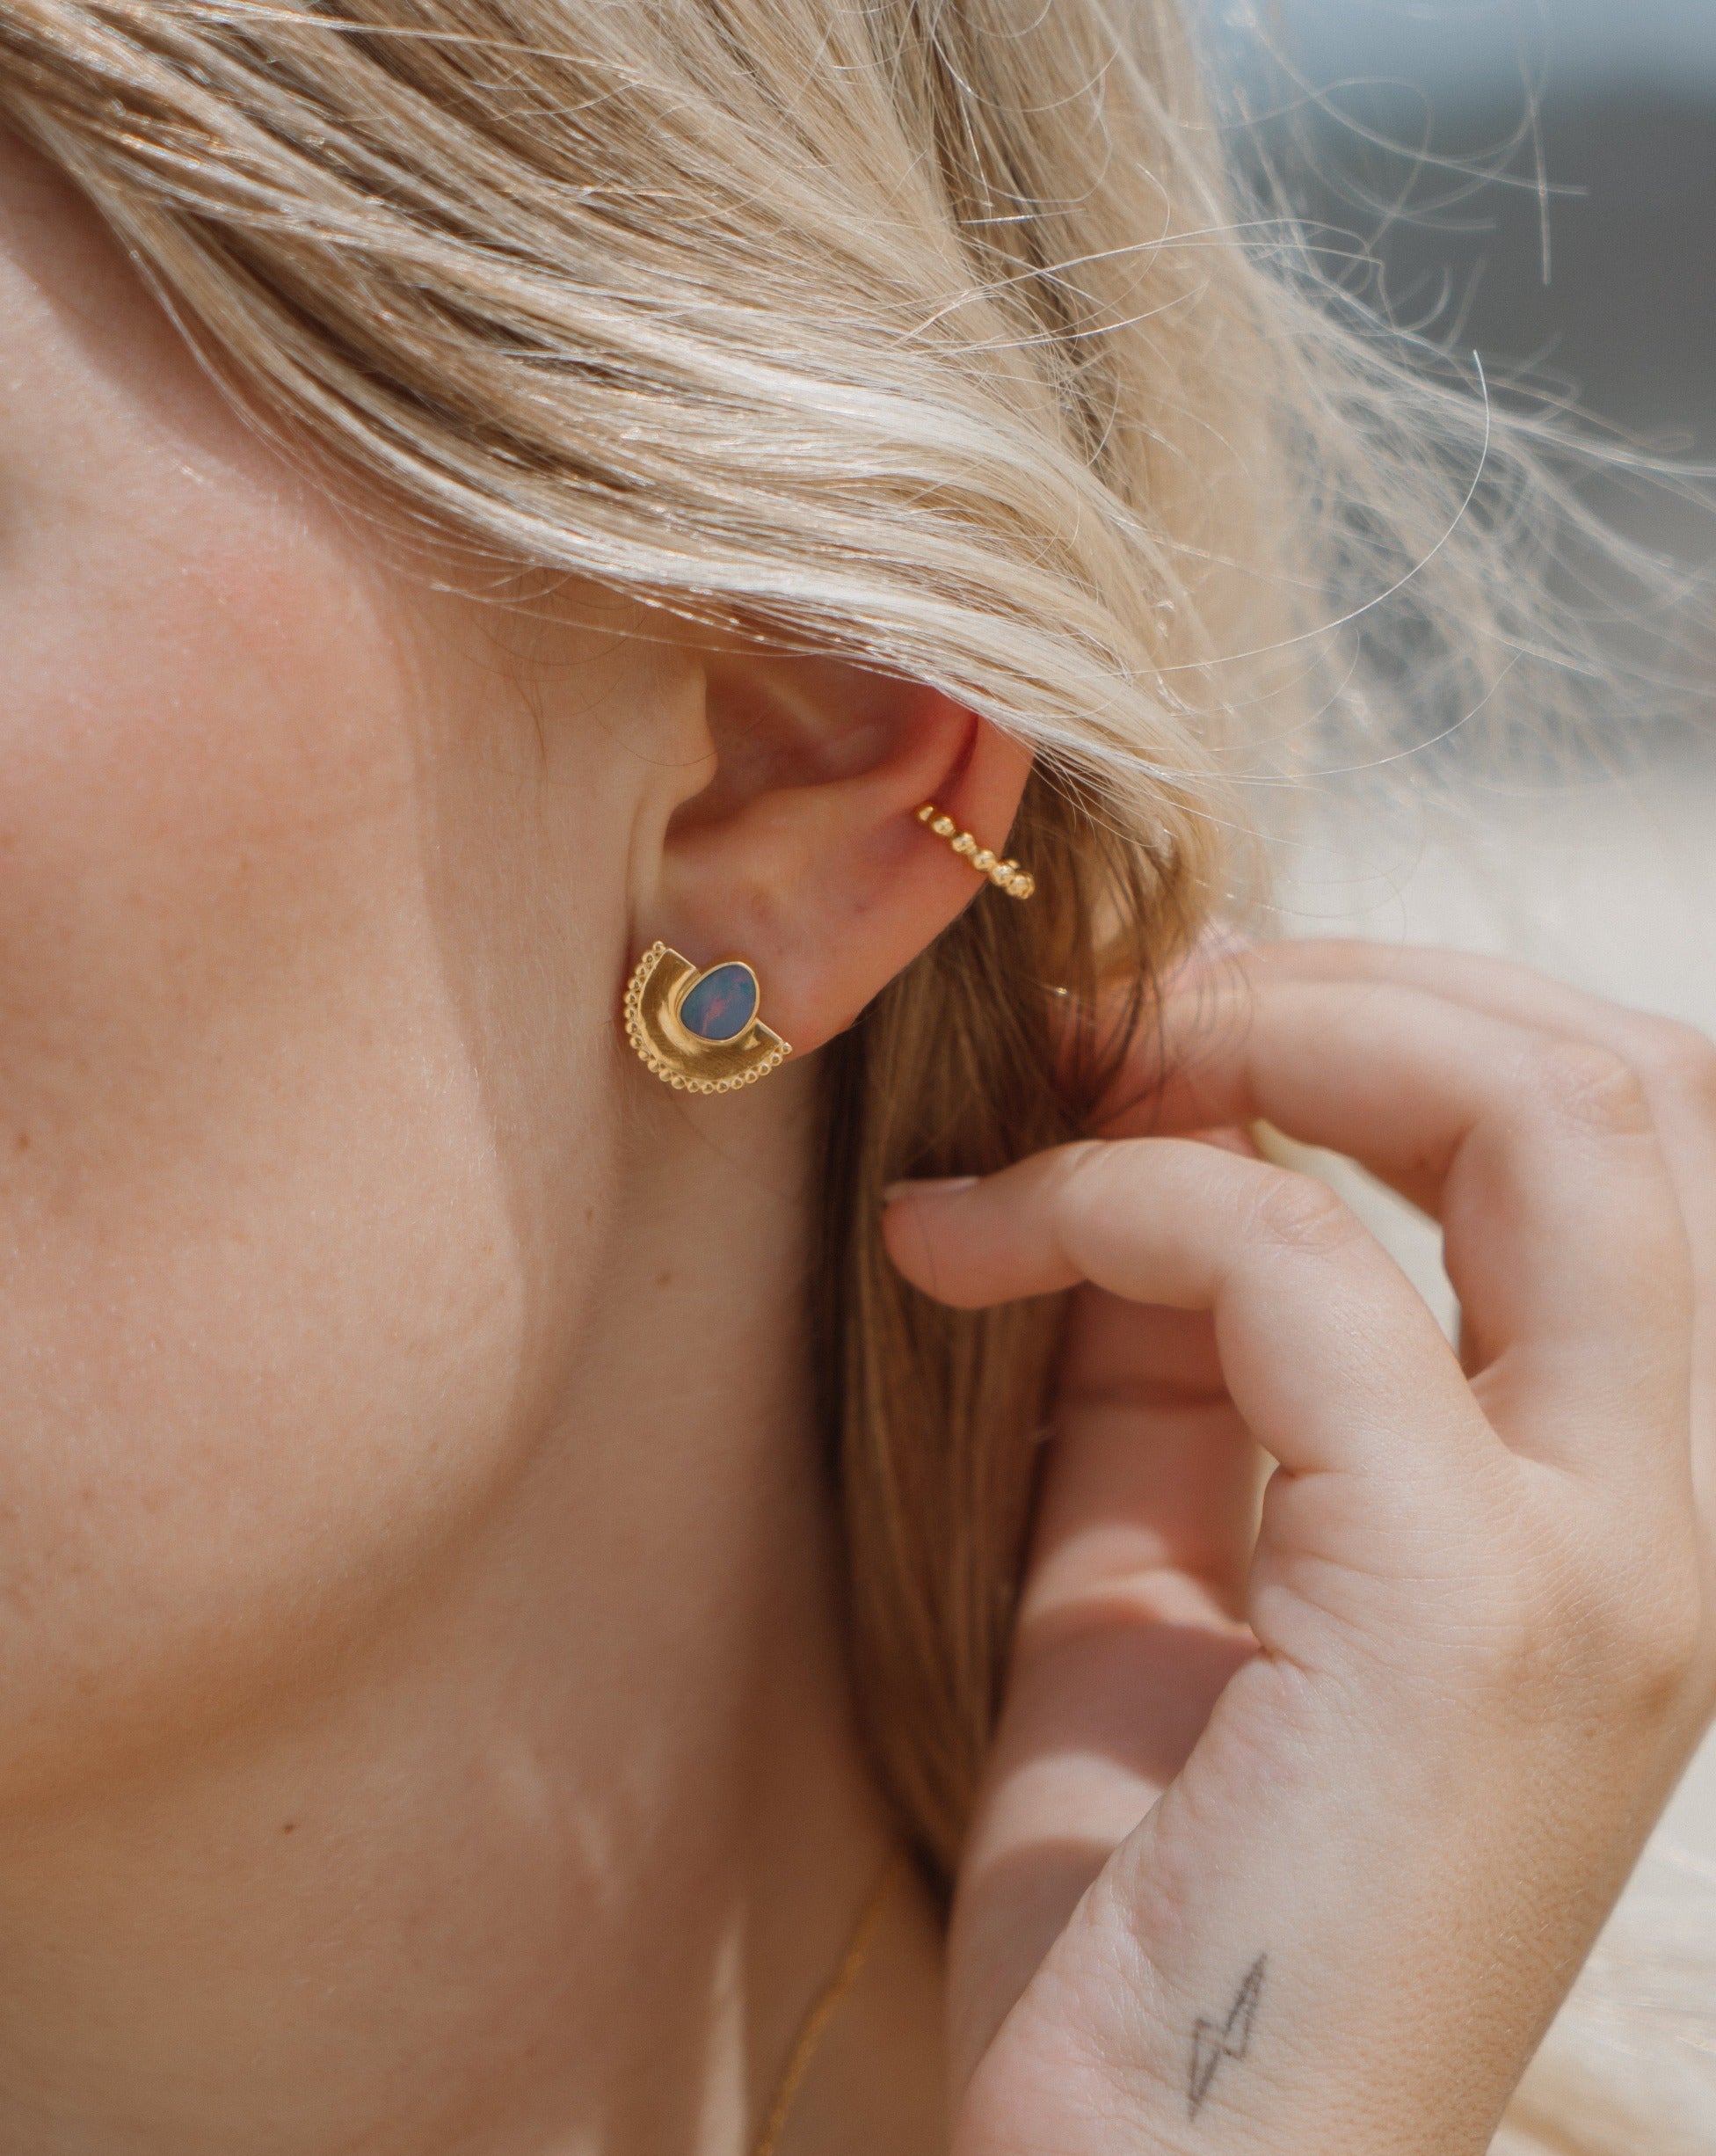 Handgemachte Ohrringe mit Opal Steinen | 925 Silber + 3 Mikron Vergoldung | Fair und umweltschonend auf Bali handgefertigt | VERLAN Jewellery | Fairfashion 